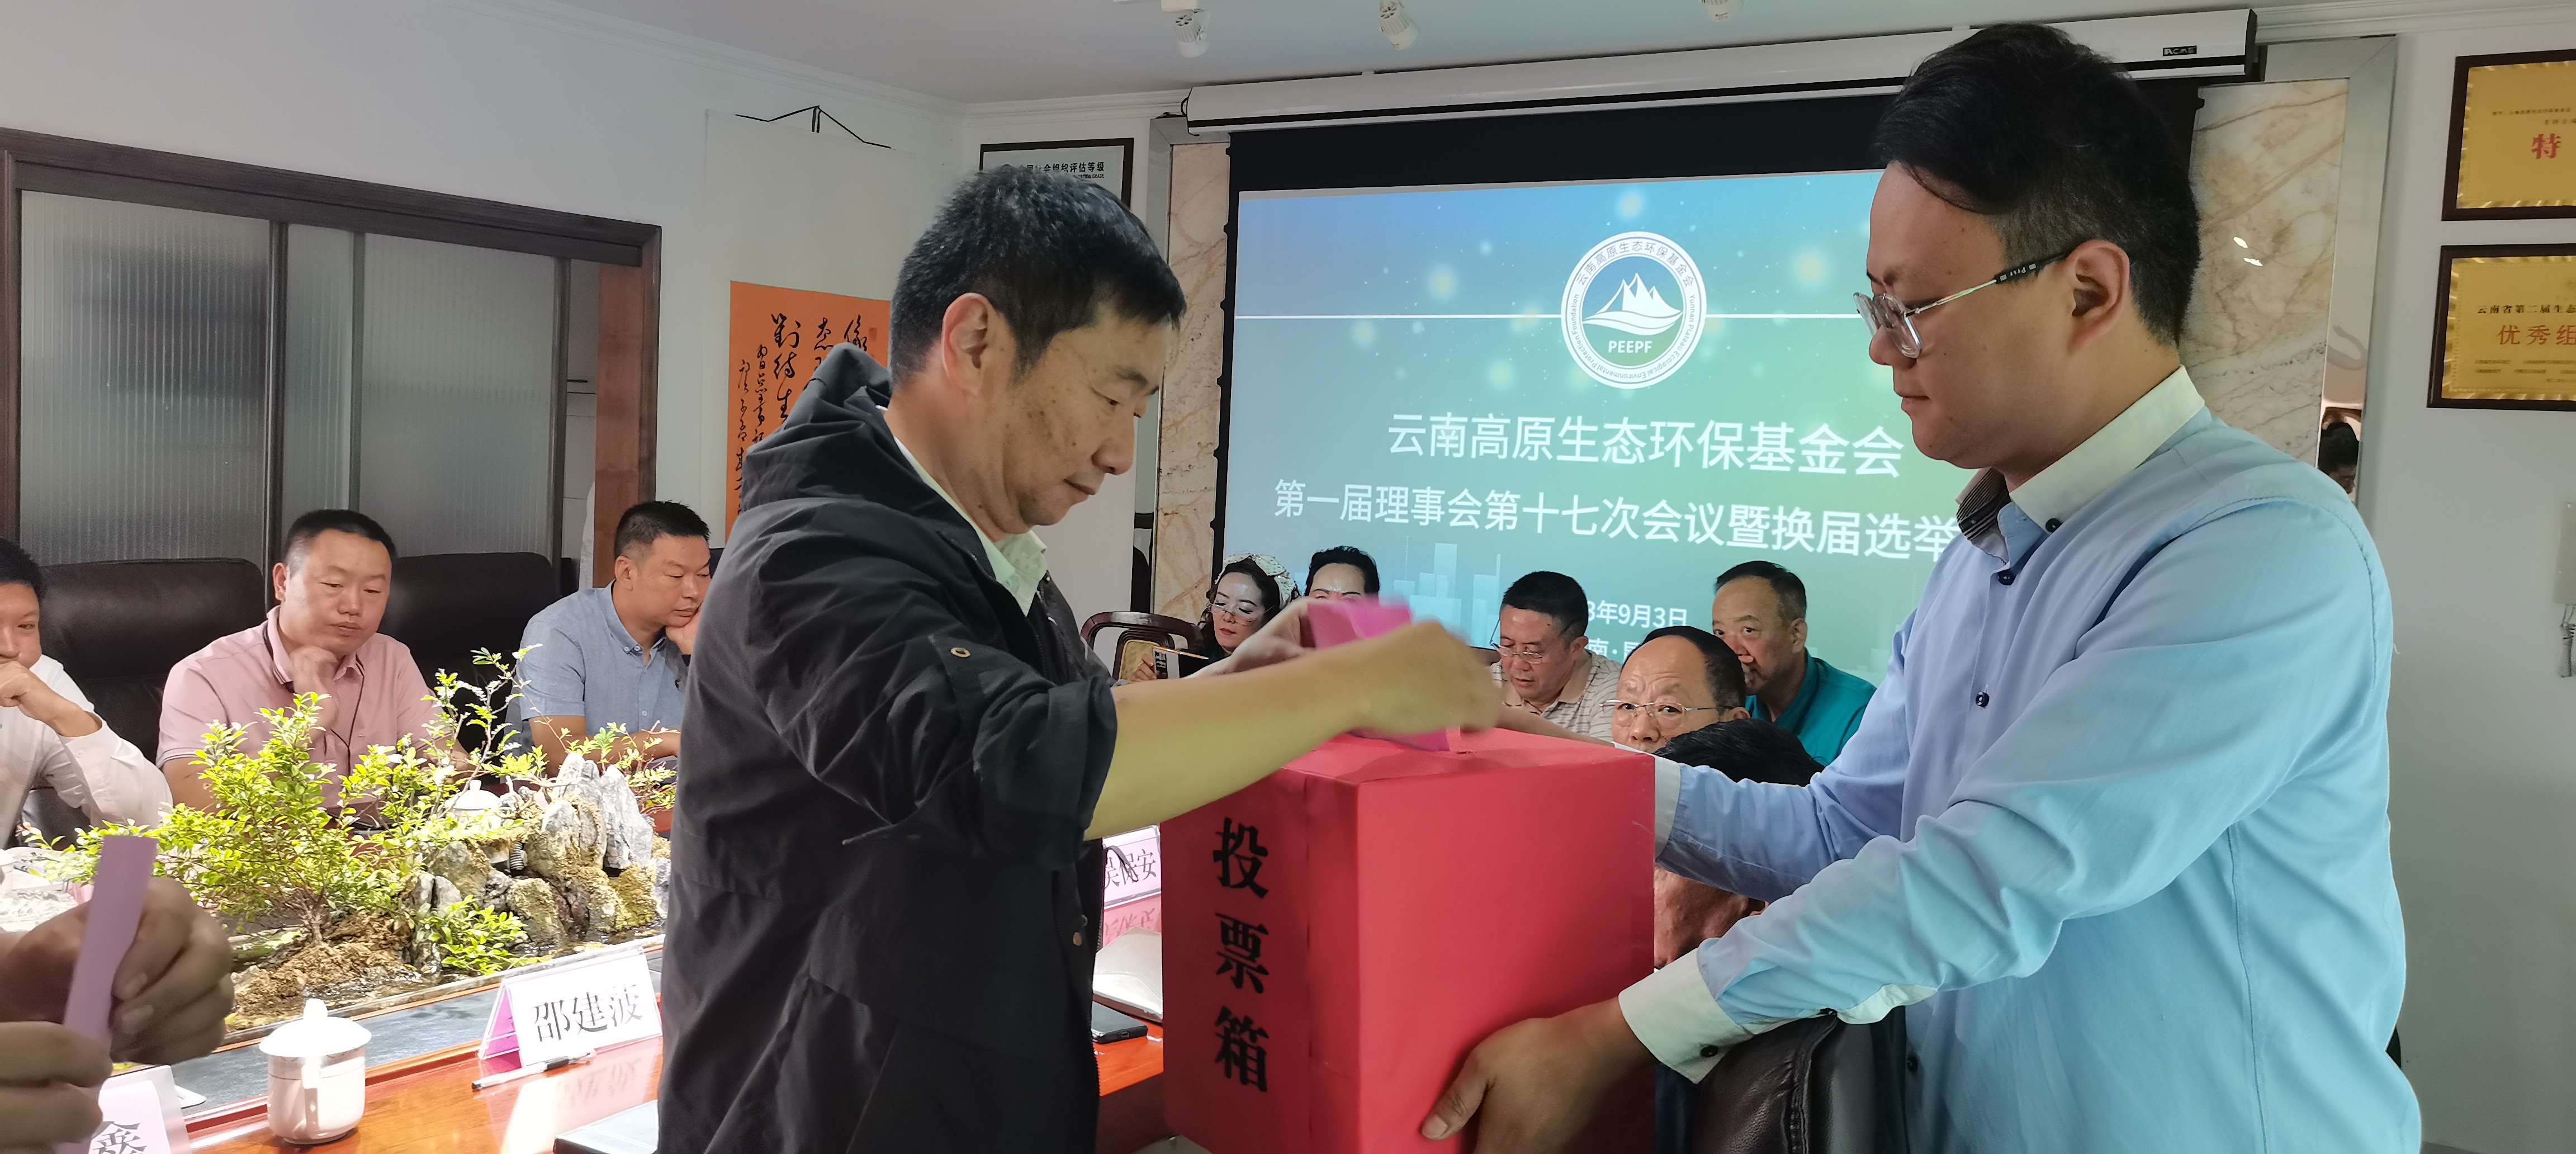 云南高原生态环保基金会换届选举大会圆满成功